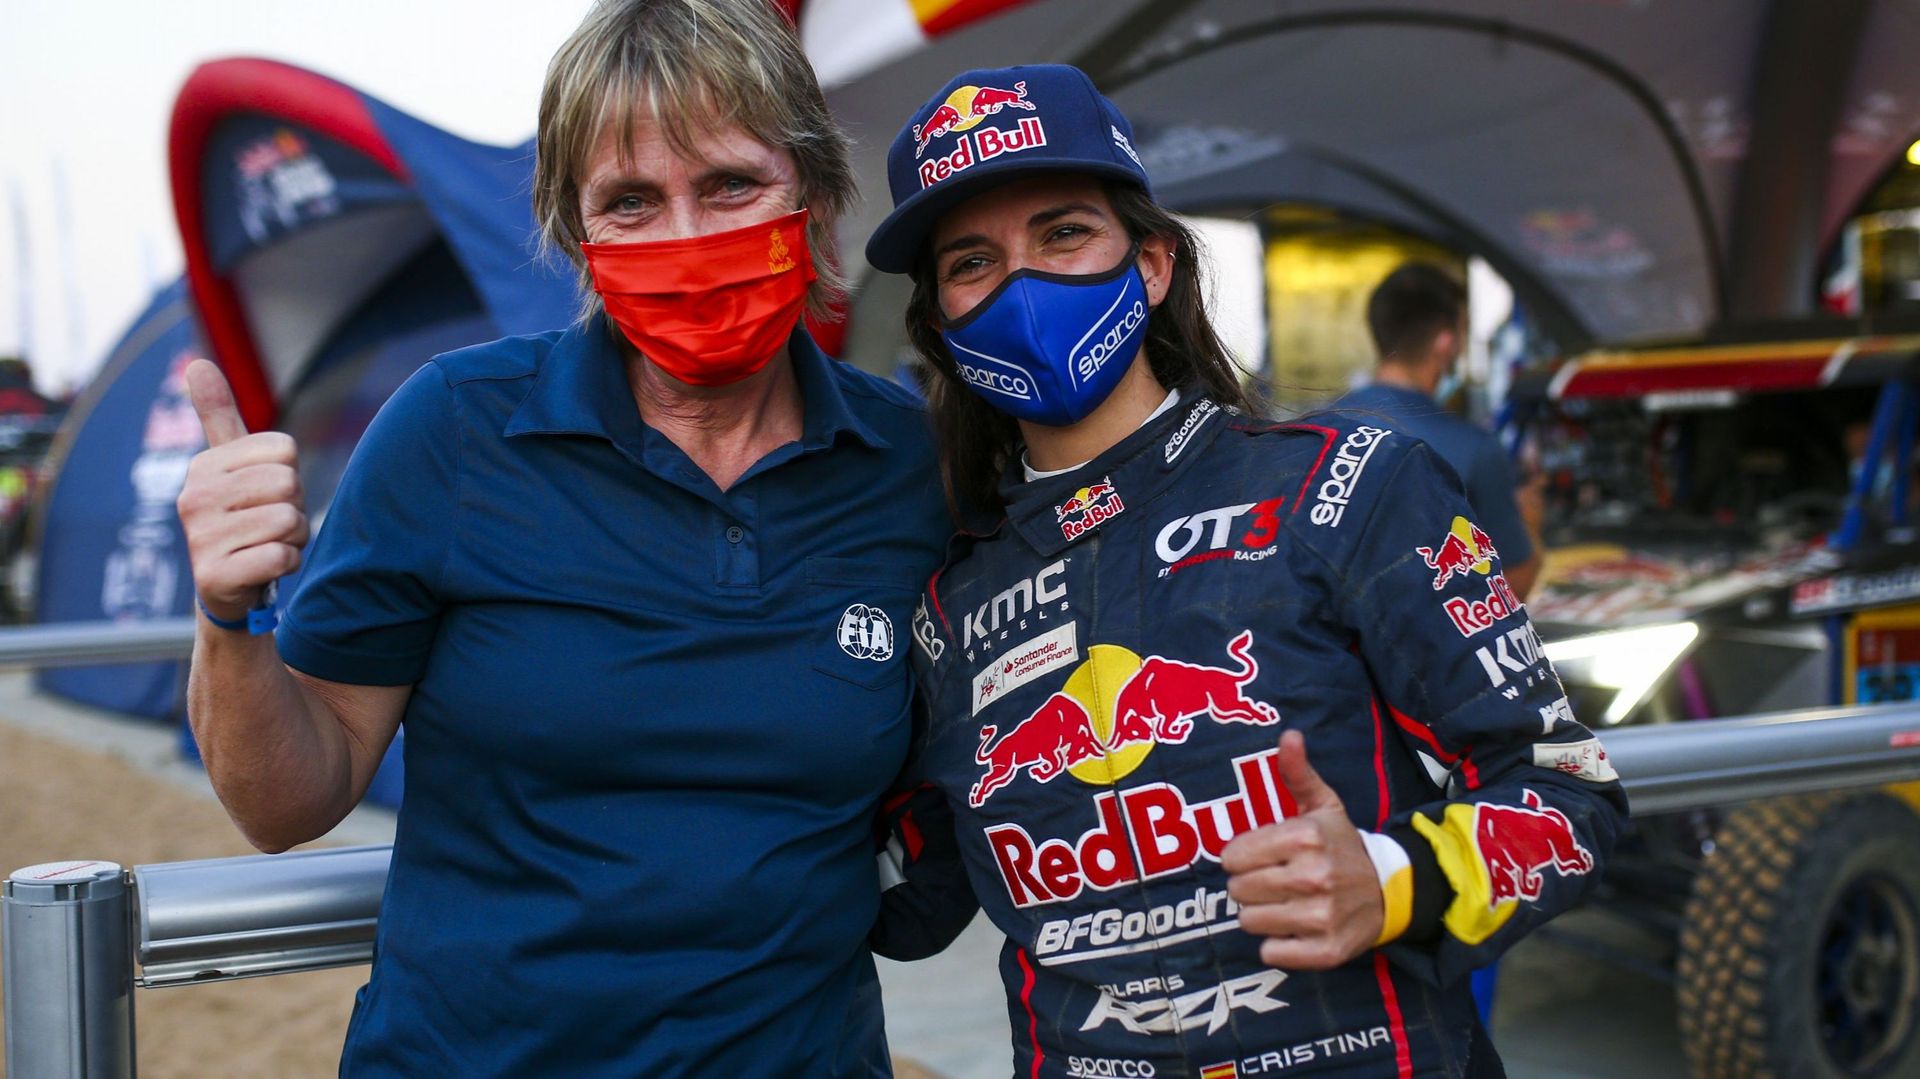 Jutta Kleinschmidt sur le Dakar 2021 avec Cristina Gutiérrez. L'Espagnole,dans la catégorie véhicules légers, est devenue la première femme à remporter une spéciale sur le Dakar depuis le dernier succès d'étape de l'Allemande en 2005.
